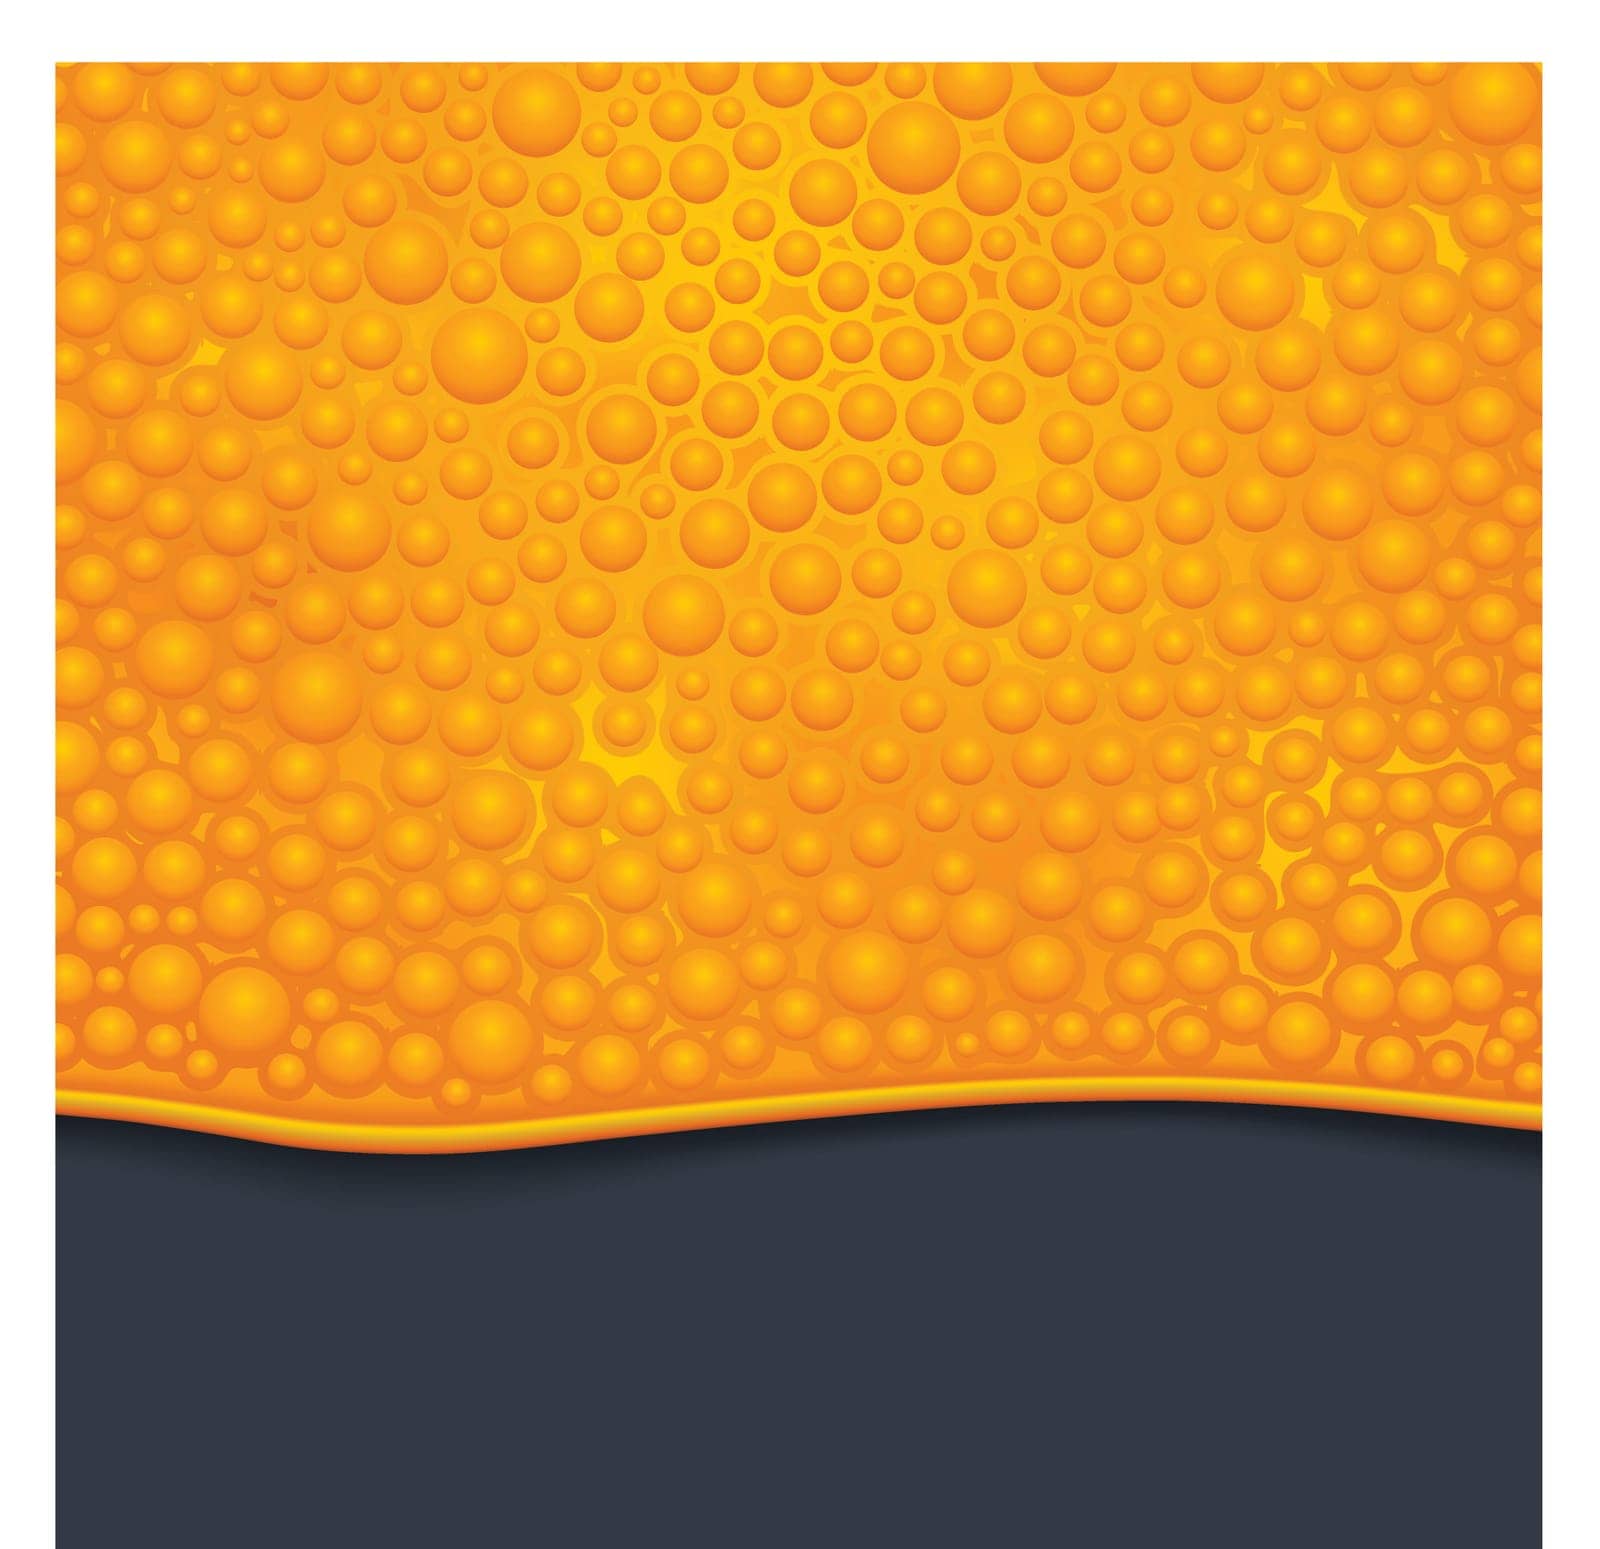 illustration of orange color bubble slime on dark background